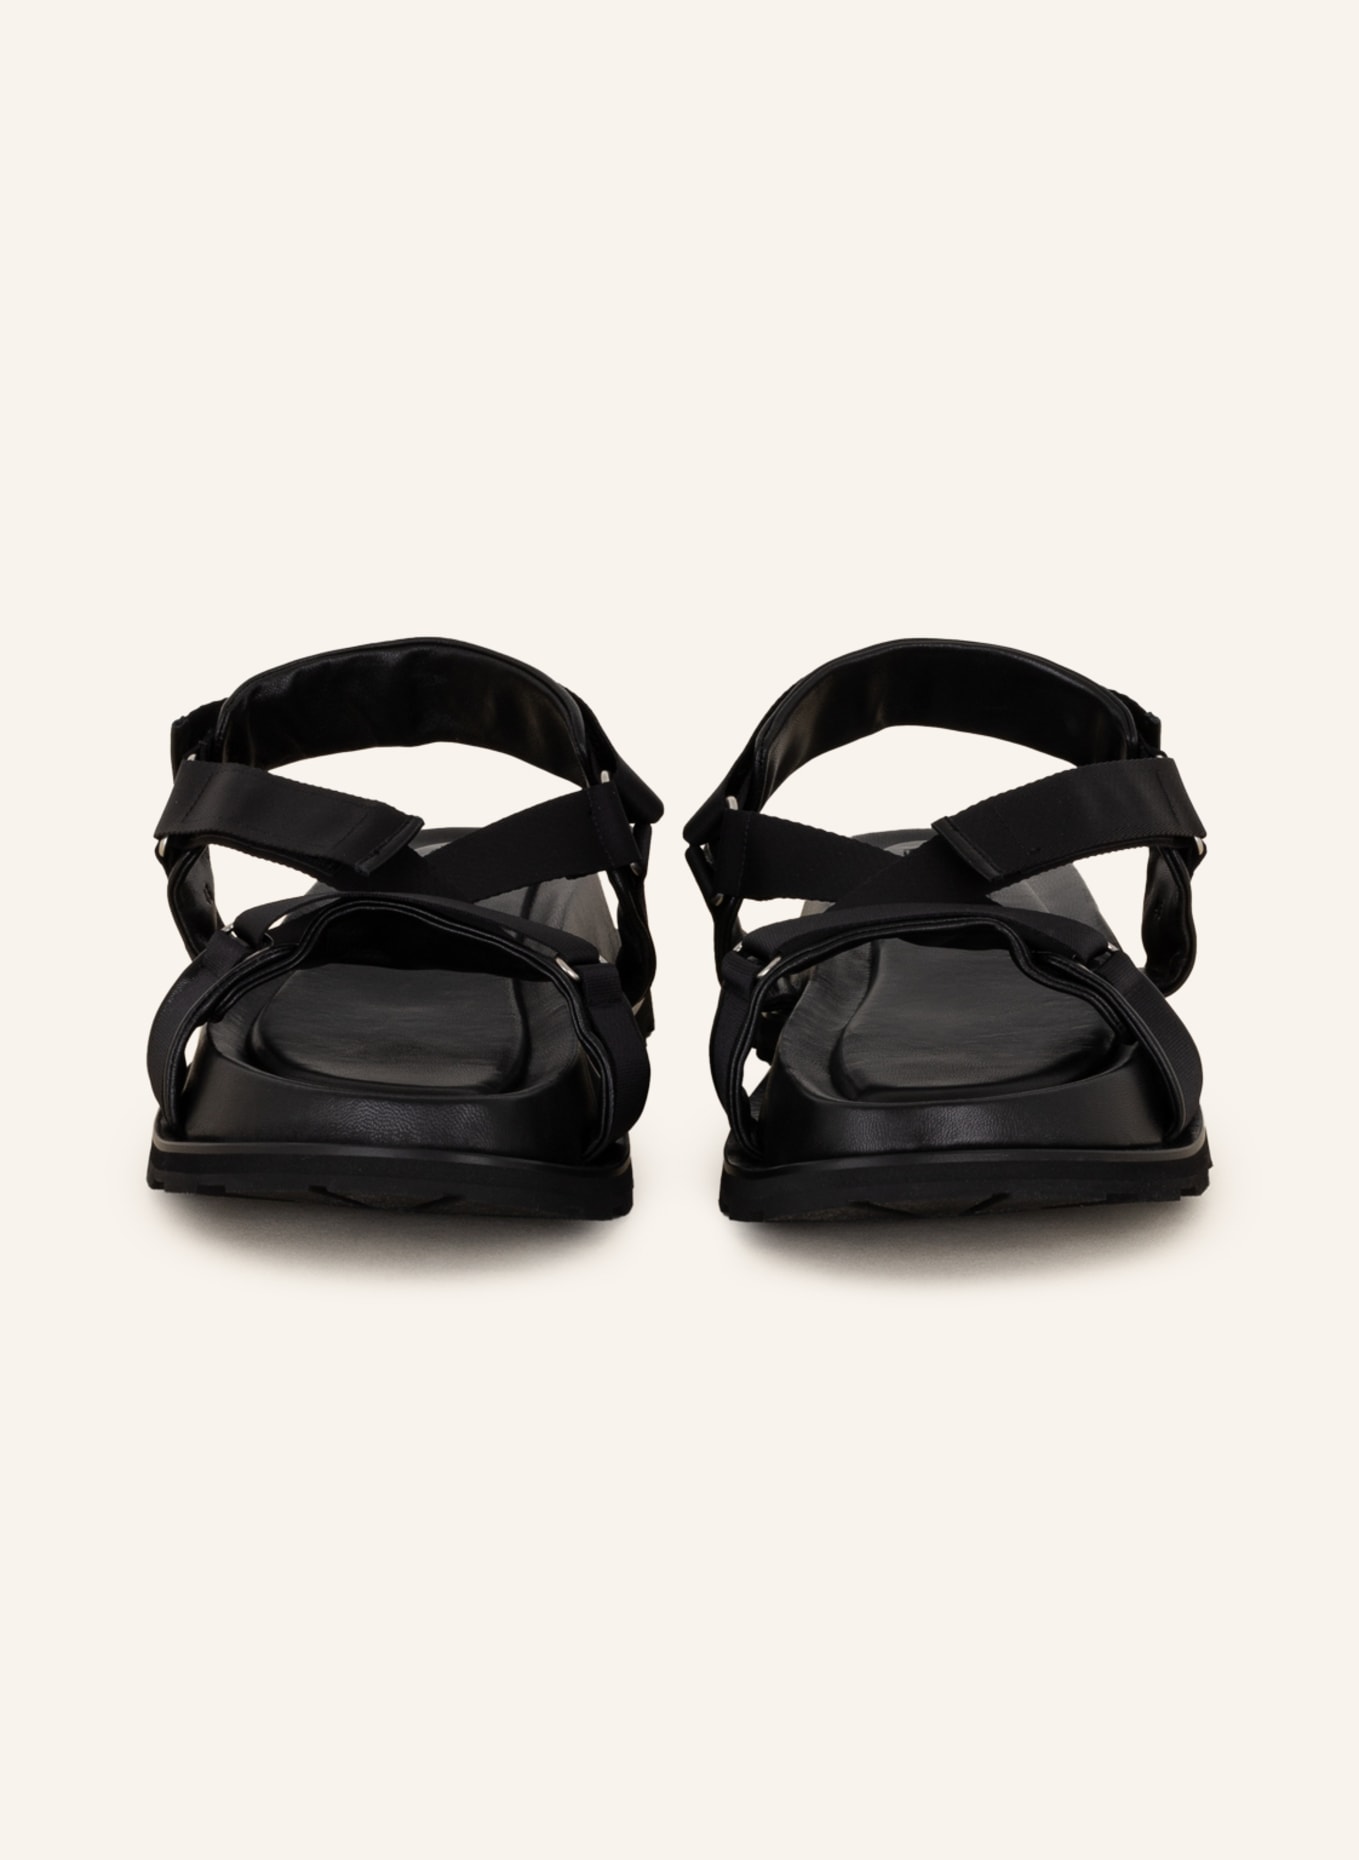 JIL SANDER Sandals, Color: BLACK (Image 3)